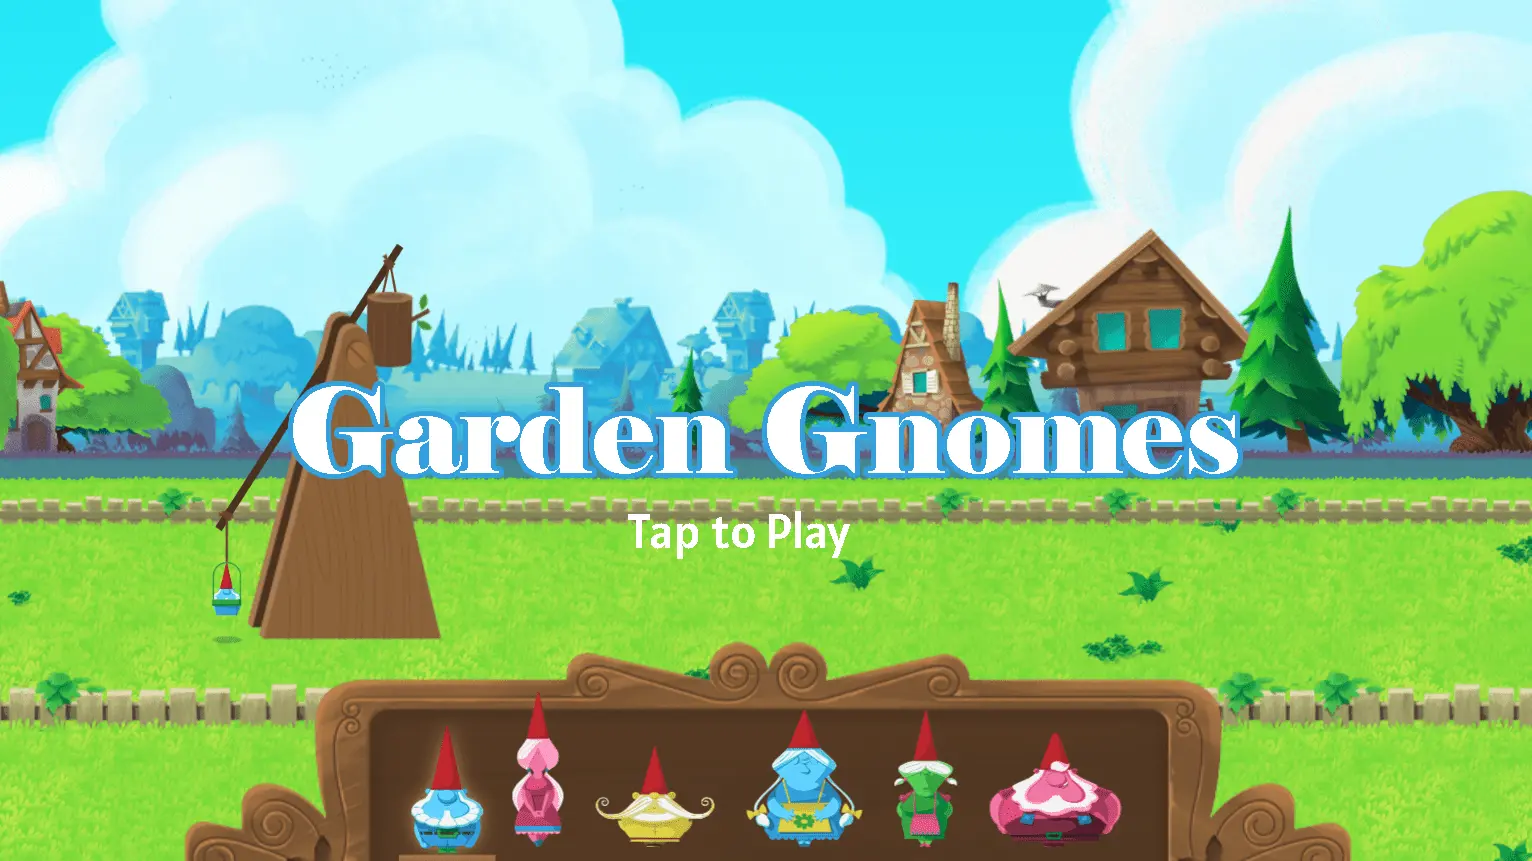 Doodle Garden Gnomes